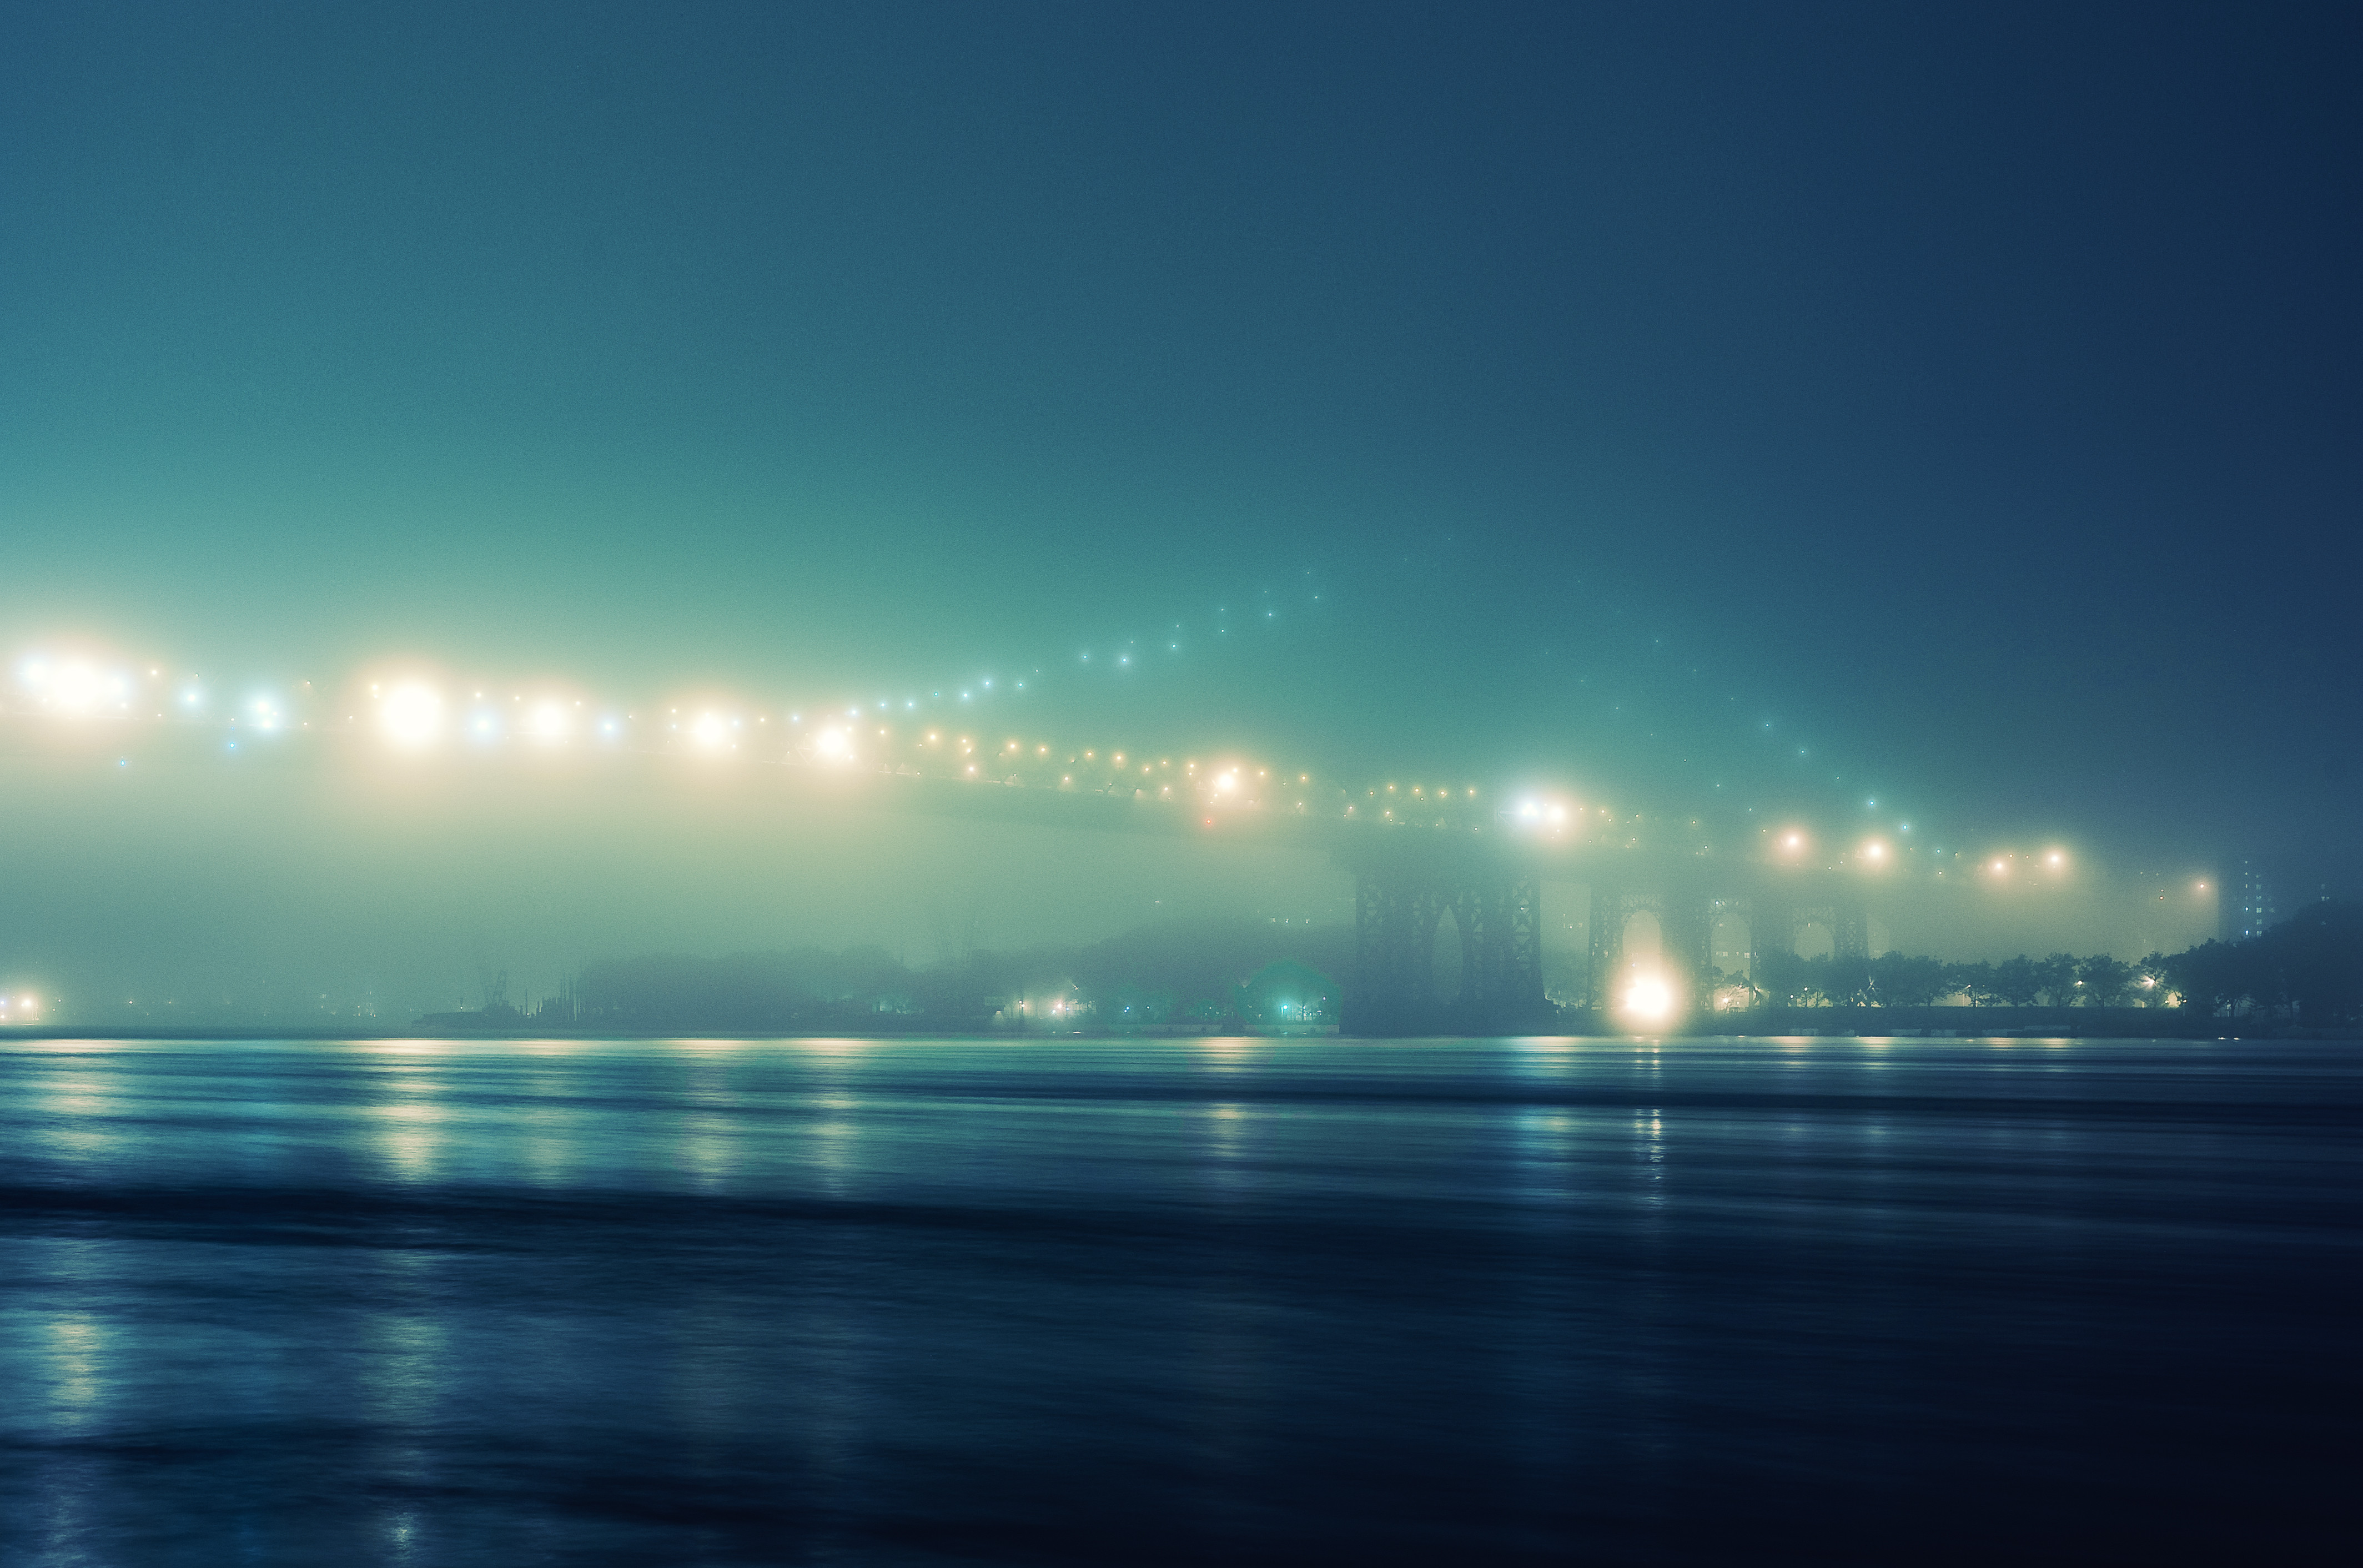 night, lights, bridges - desktop wallpaper